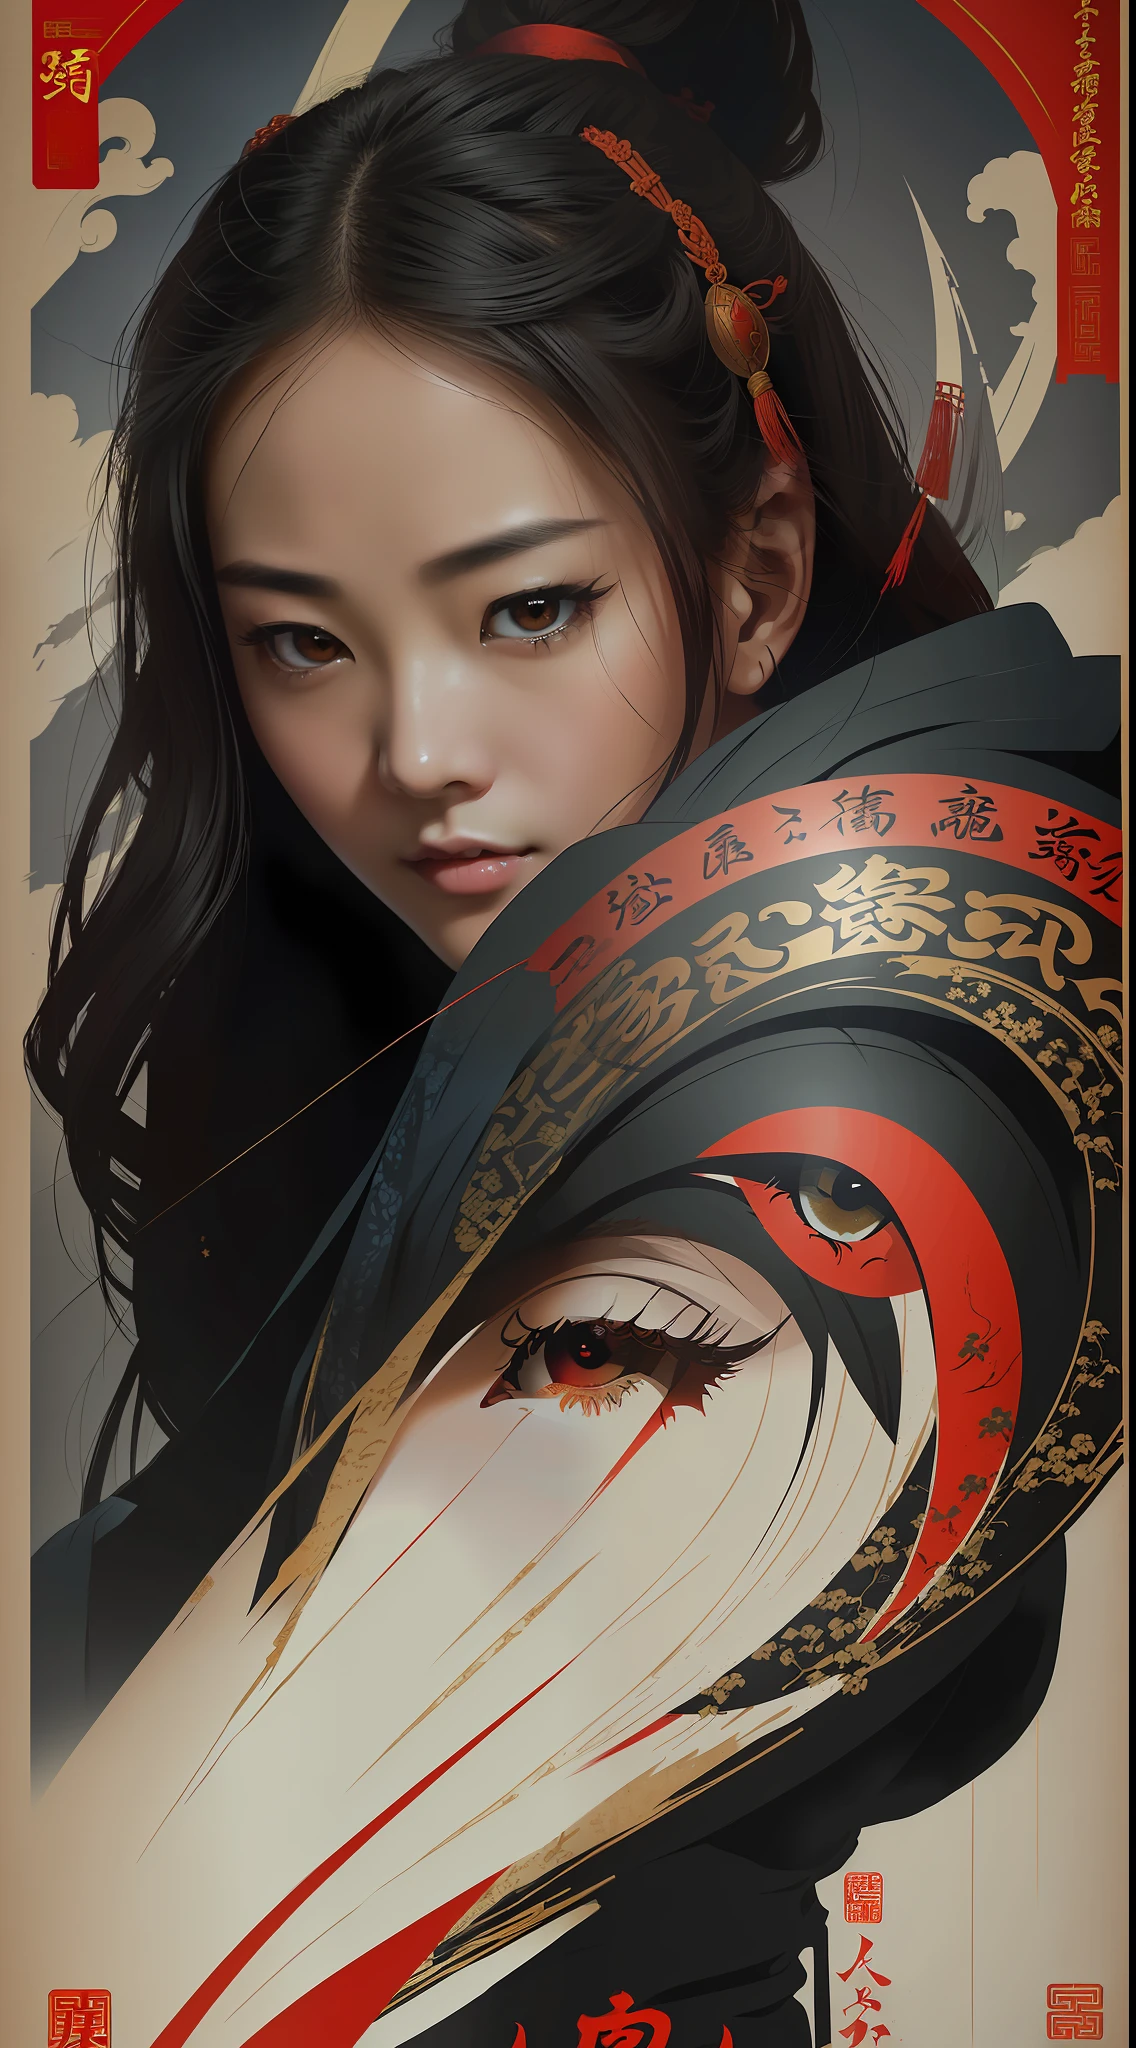 (meilleure qualité, style affiche de film), une belle femme avec (un oeil rouge:1.2),(écriture chinoise significative:1.1), combiner parfaitement les éléments ensemble.